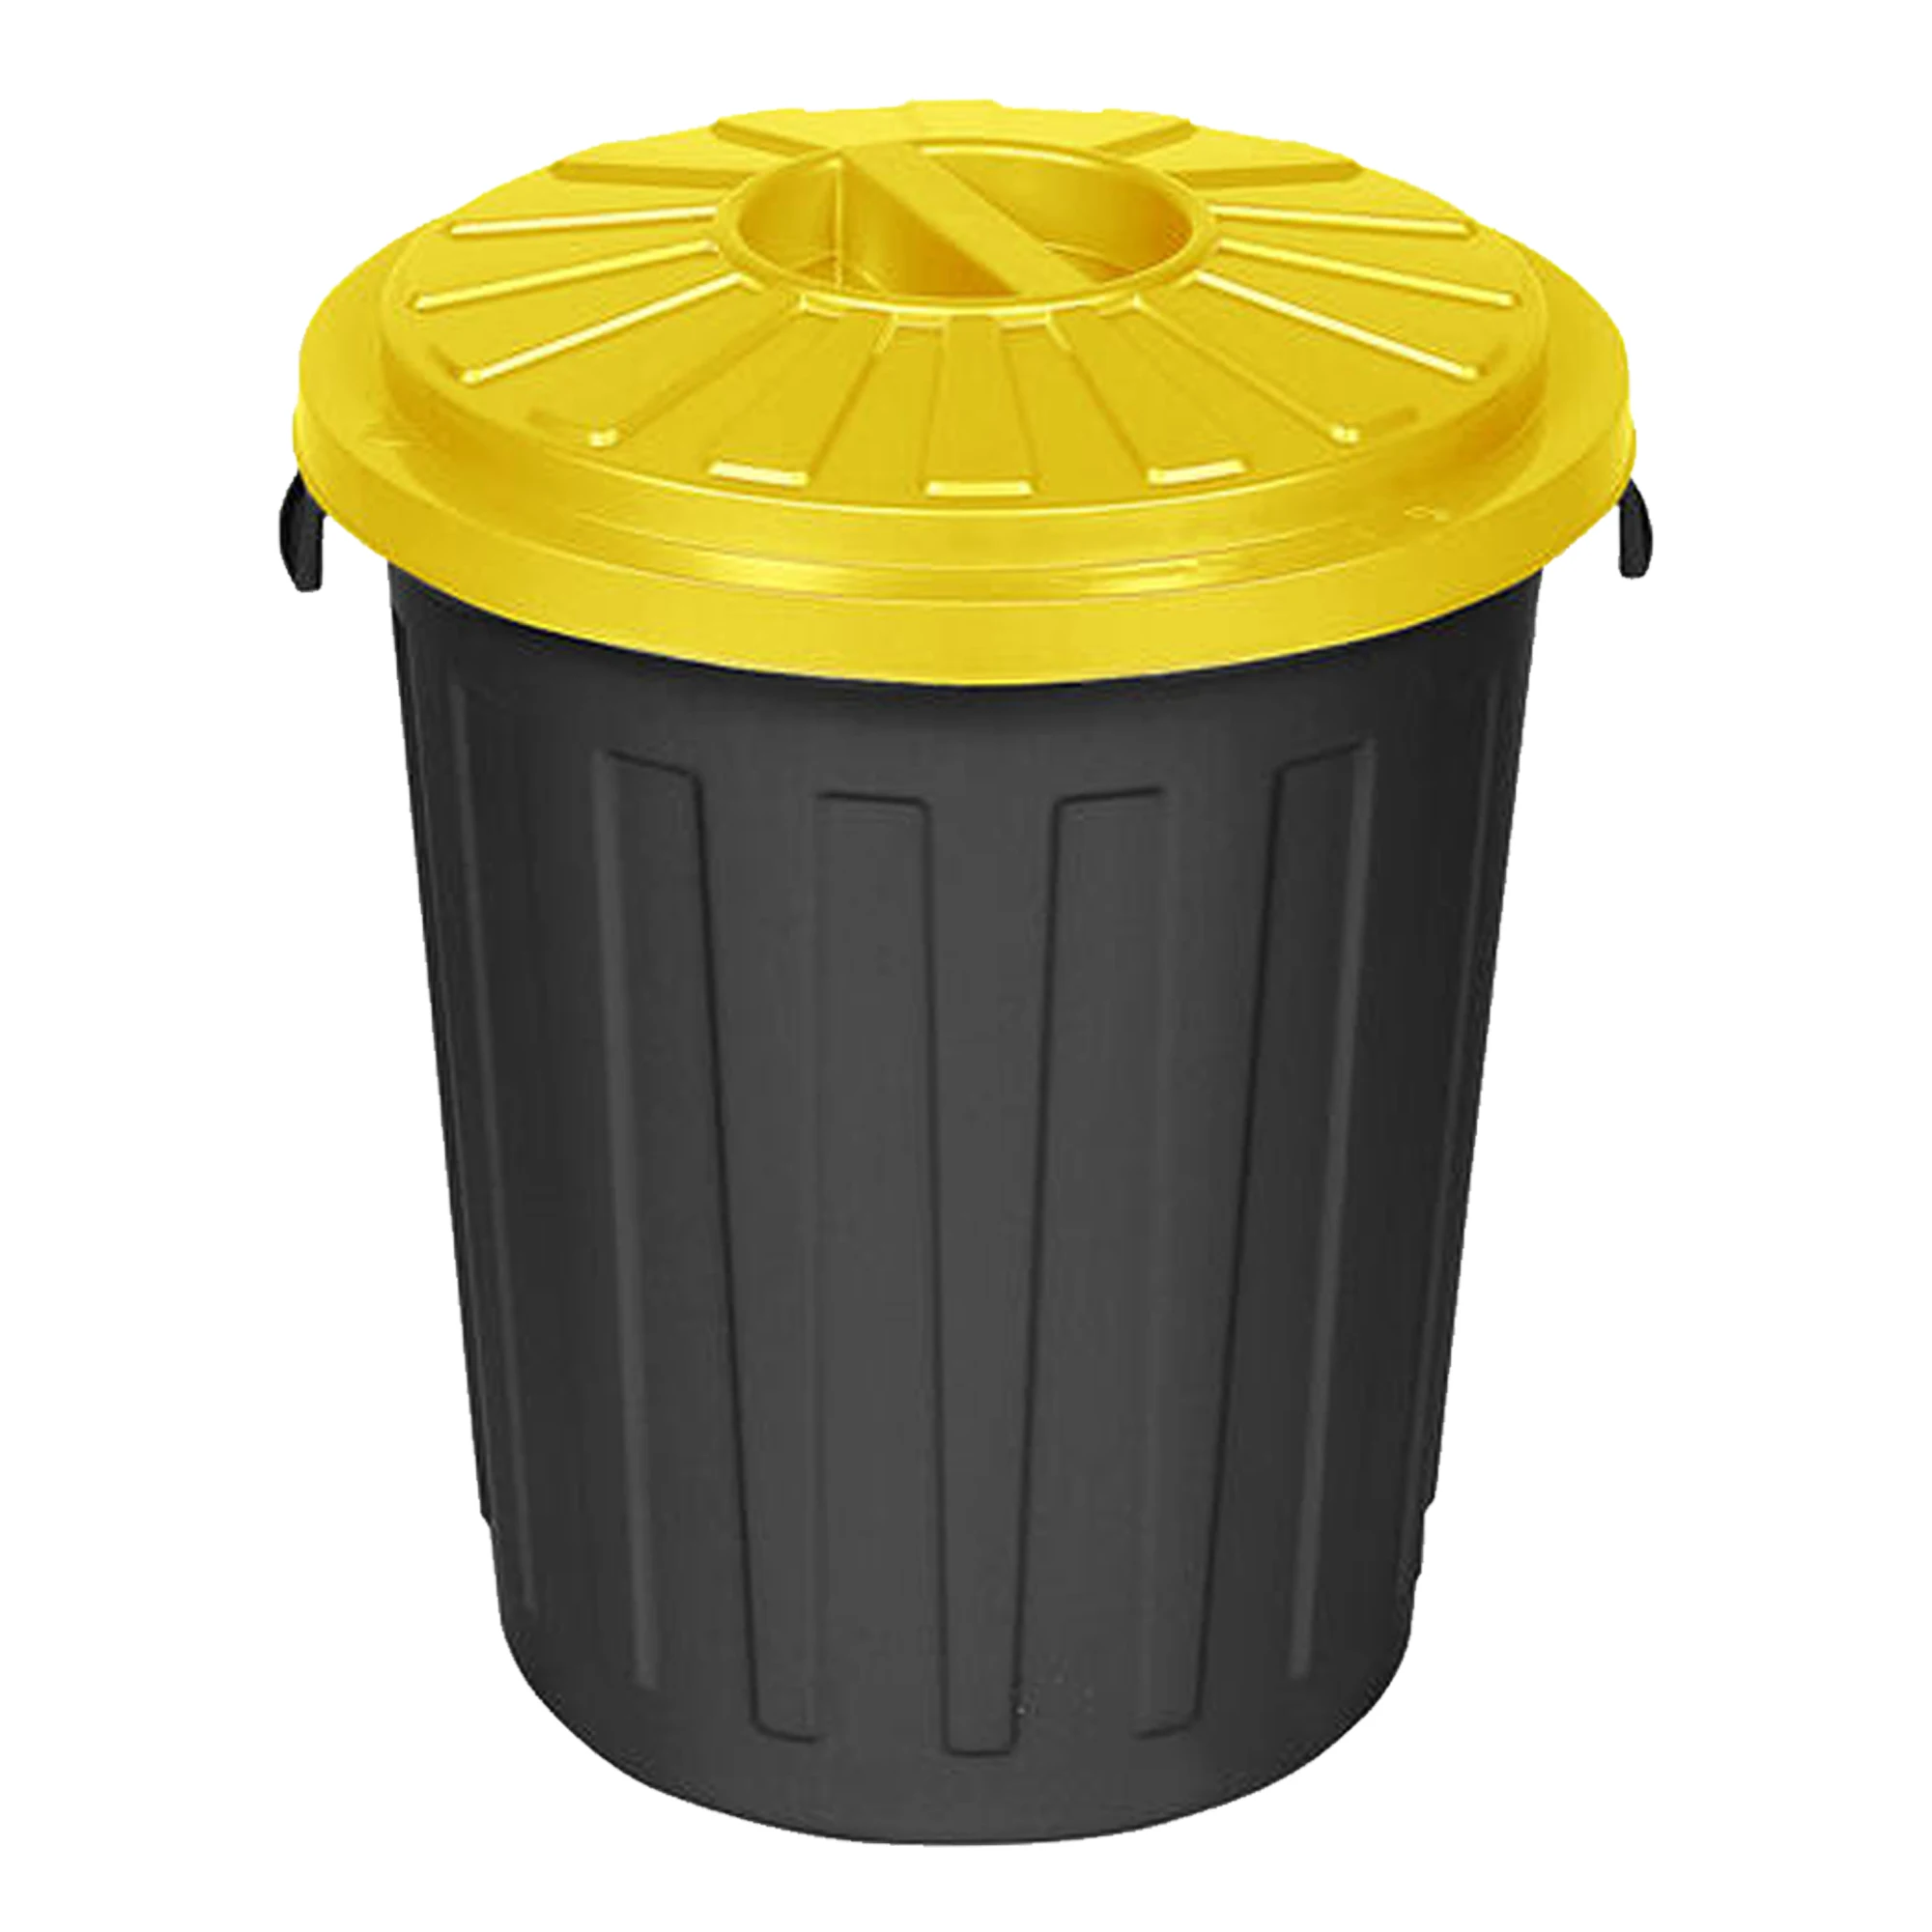 Cubo Basura de plástico con Tapadera, Cubo almacenaje y reciclar, 50  litros (Amarillo)